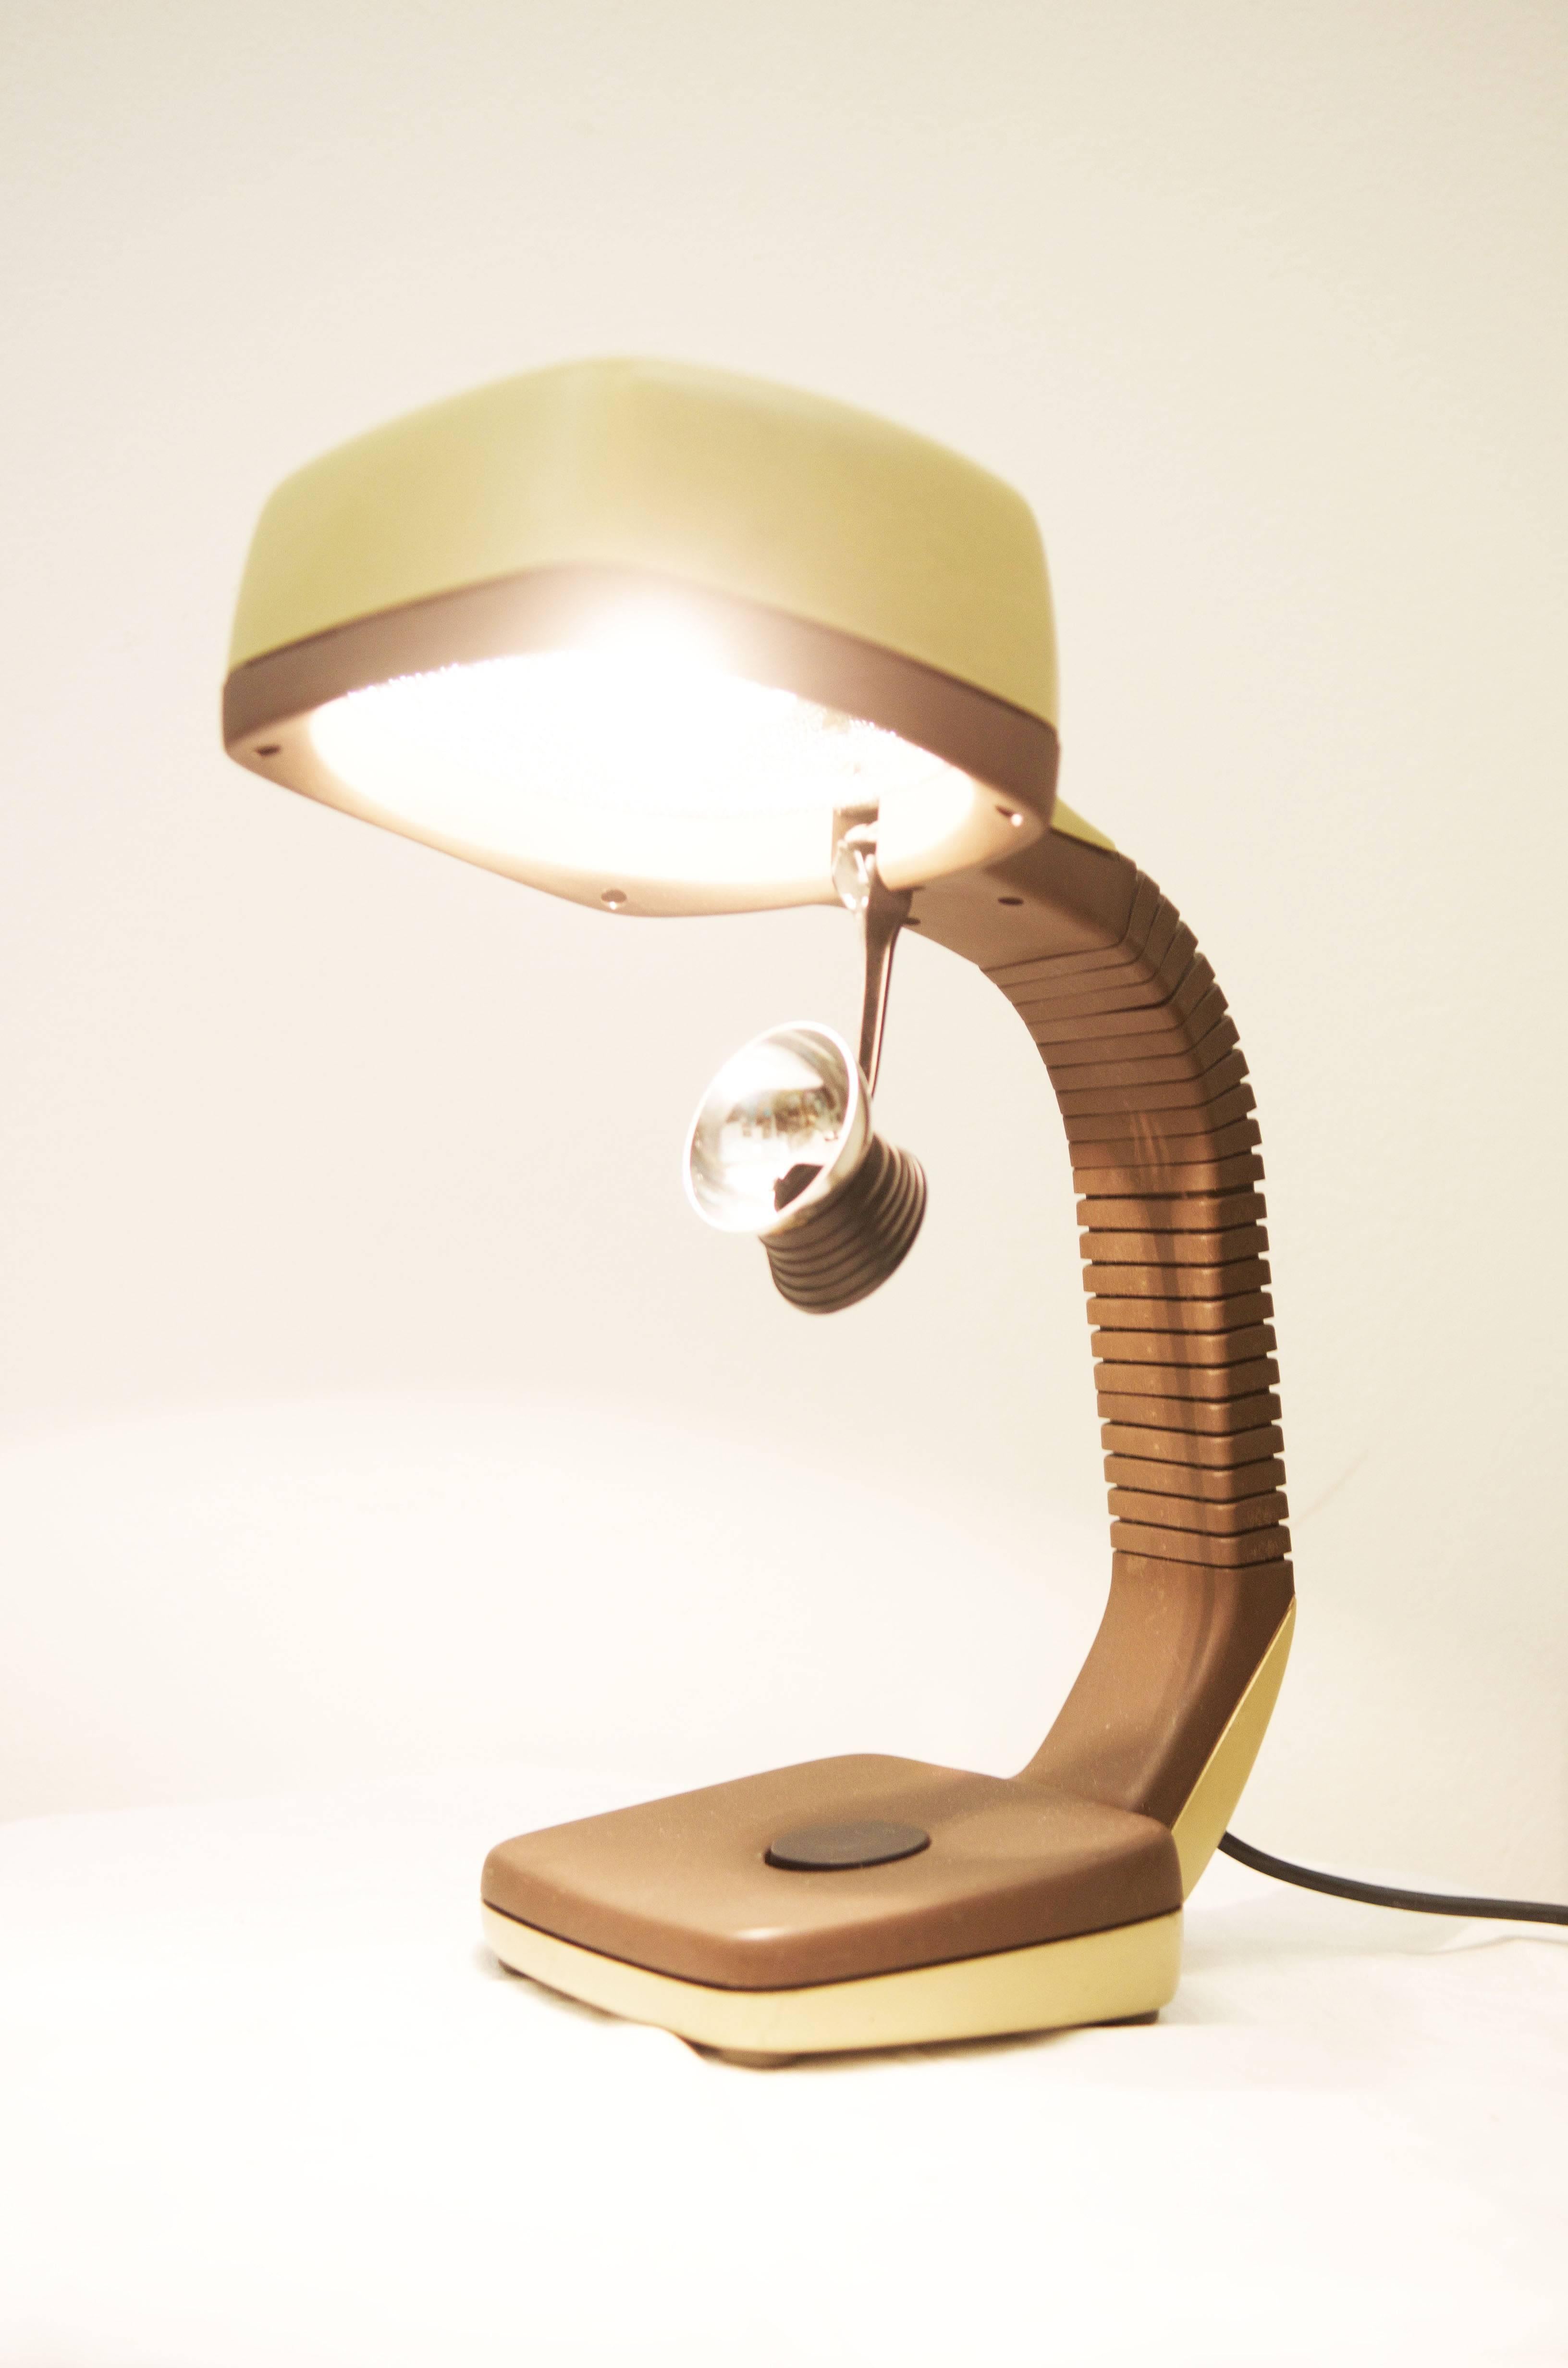 70s desk lamp